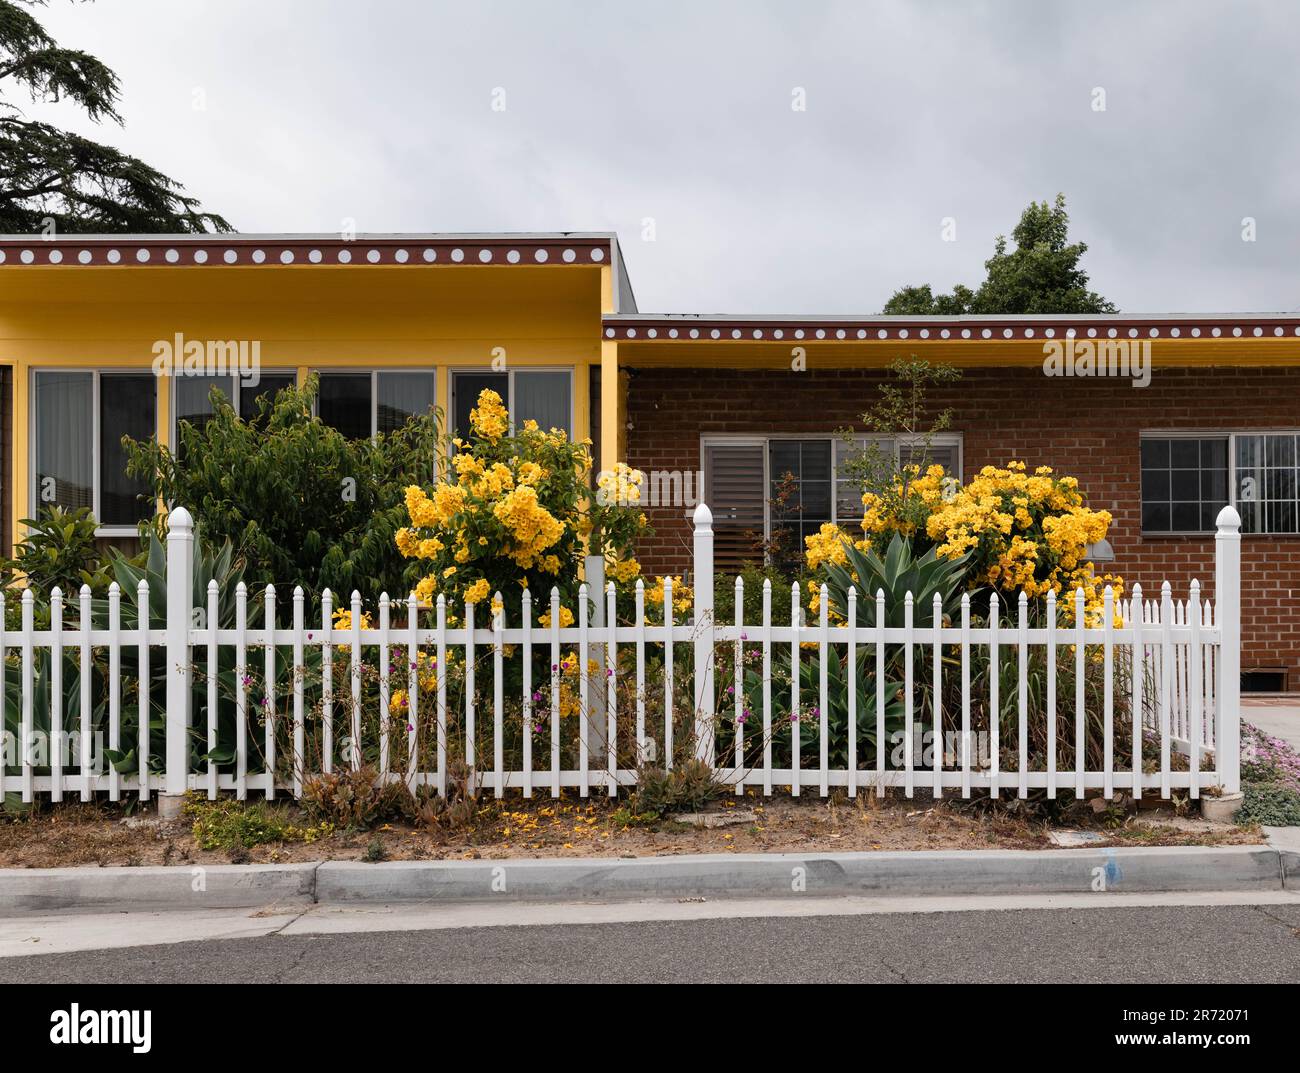 Fleurs jaunes en pleine fleur derrière une clôture blanche de piquetage devant une maison jaune en bois de Californie. Banque D'Images